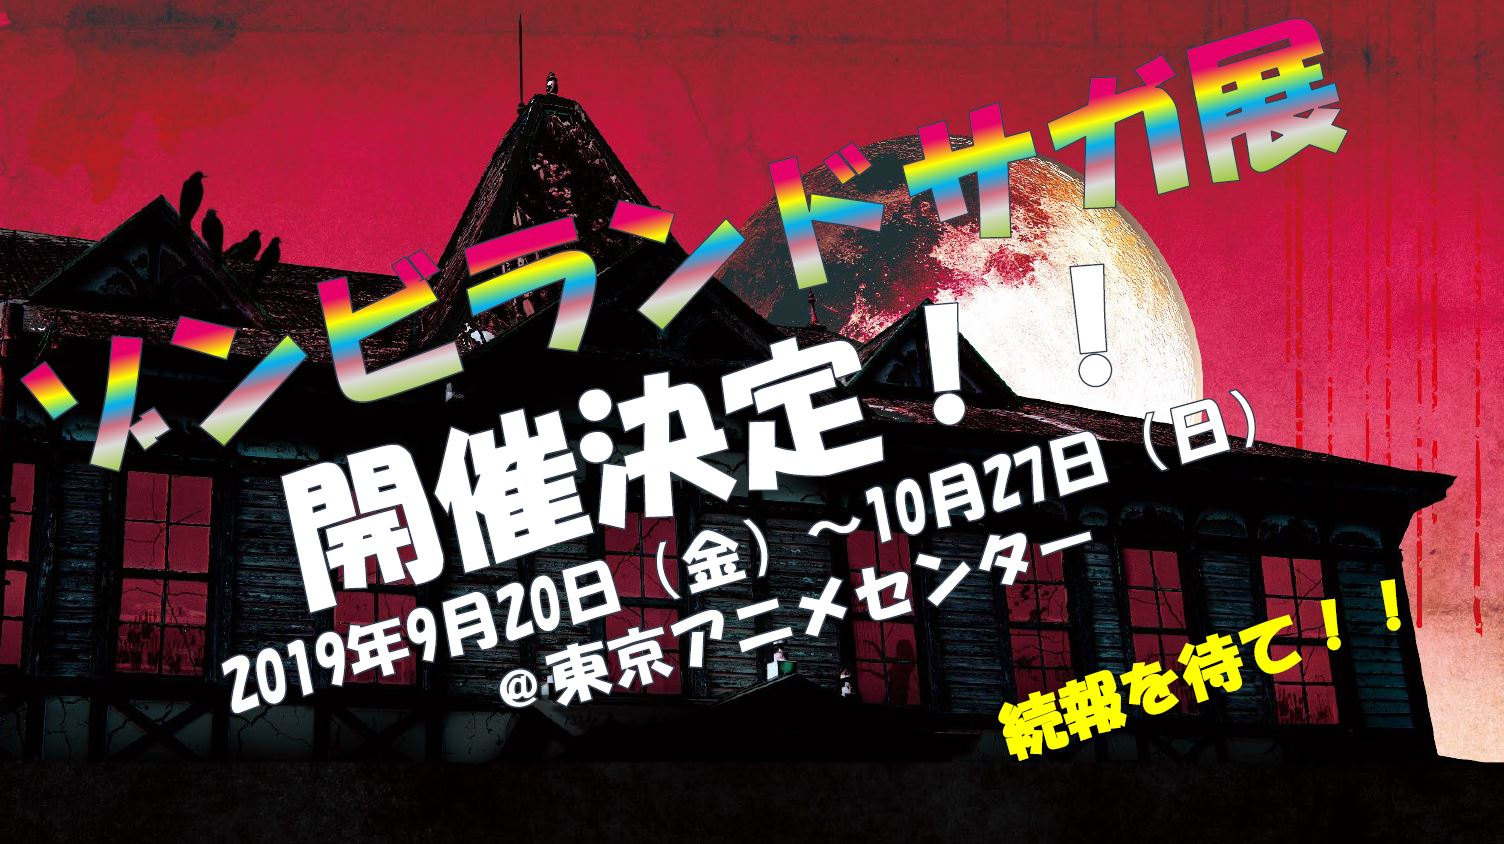 《佐贺偶像是传奇》二期制作决定并宣布将在东京举办佐贺偶像是传奇展